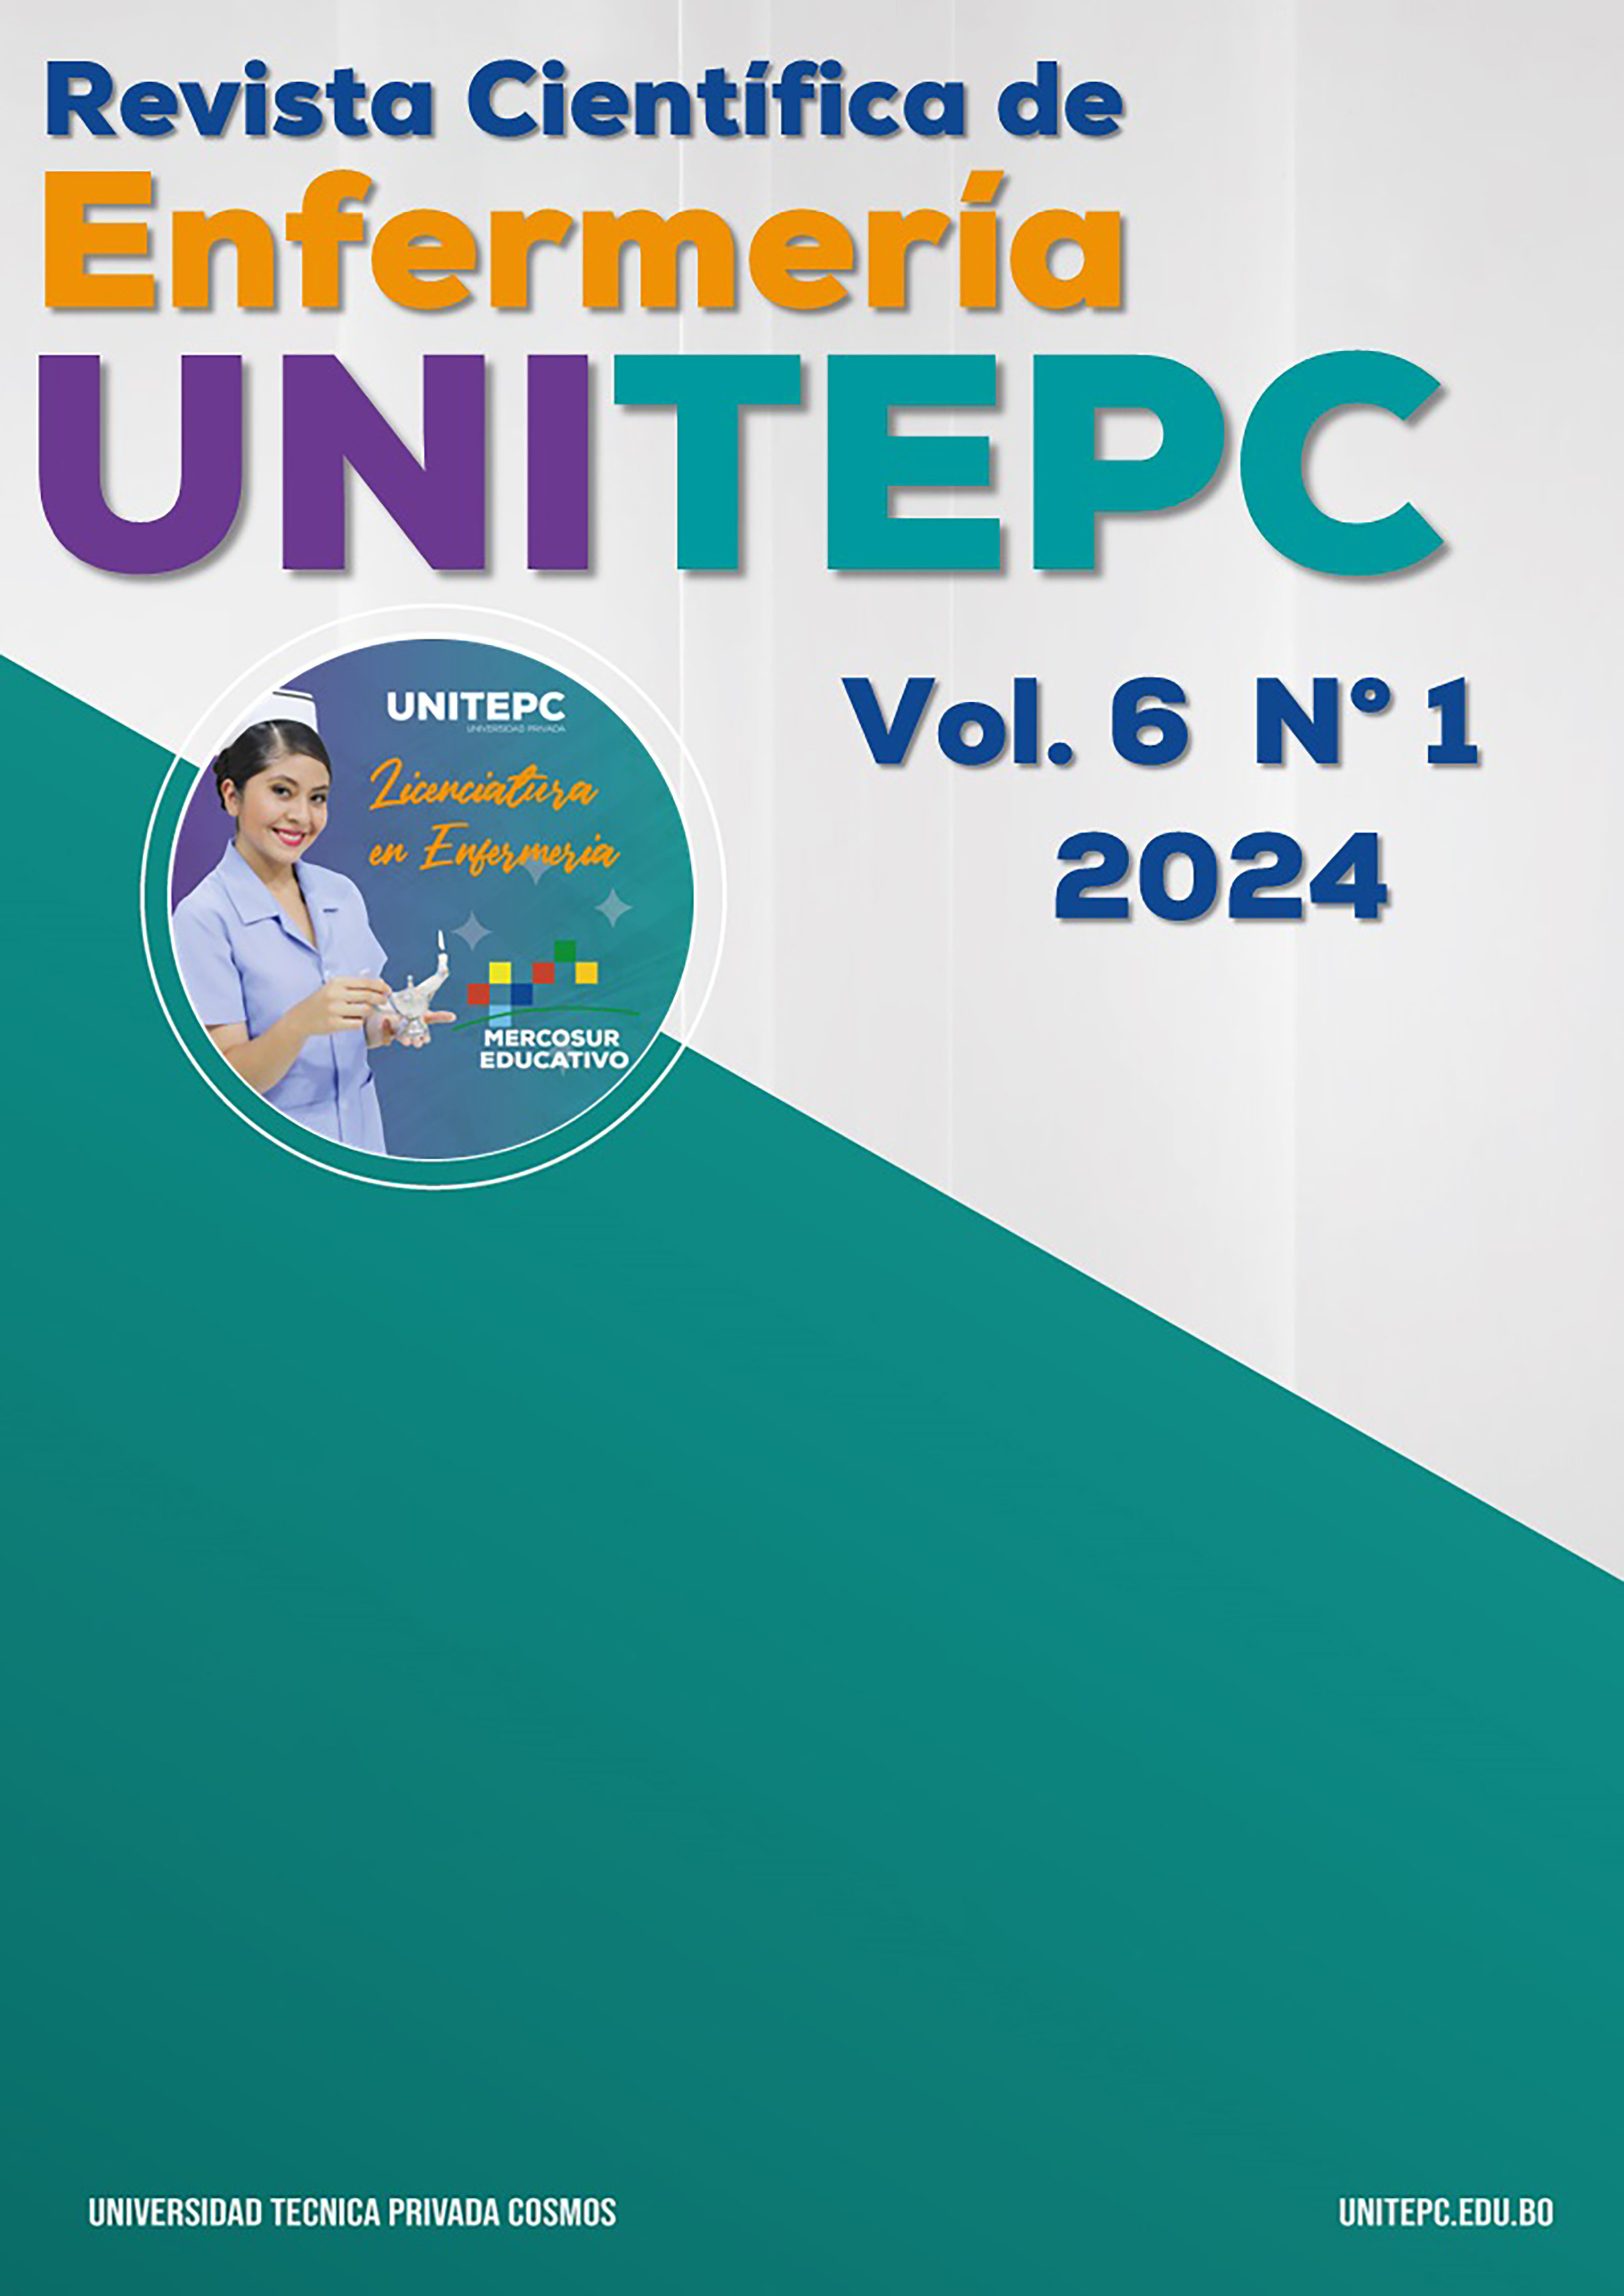 					Ver Vol. 6 Núm. 1 (2024): Revista Científica de Enfermería UNITEPC
				